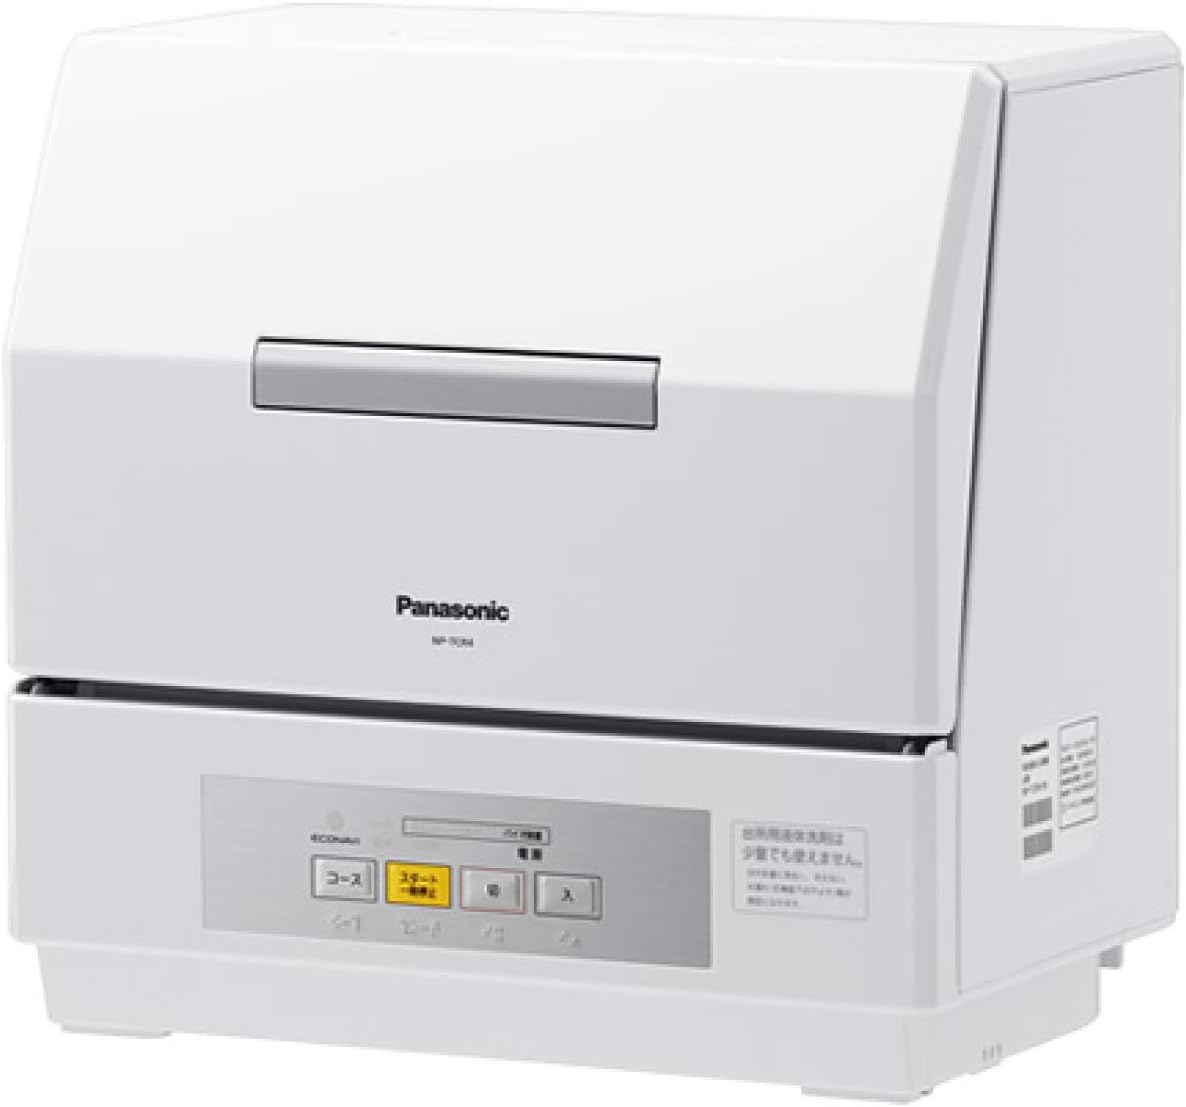 【展示品】パナソニック Panasonic 食器洗い乾燥機 